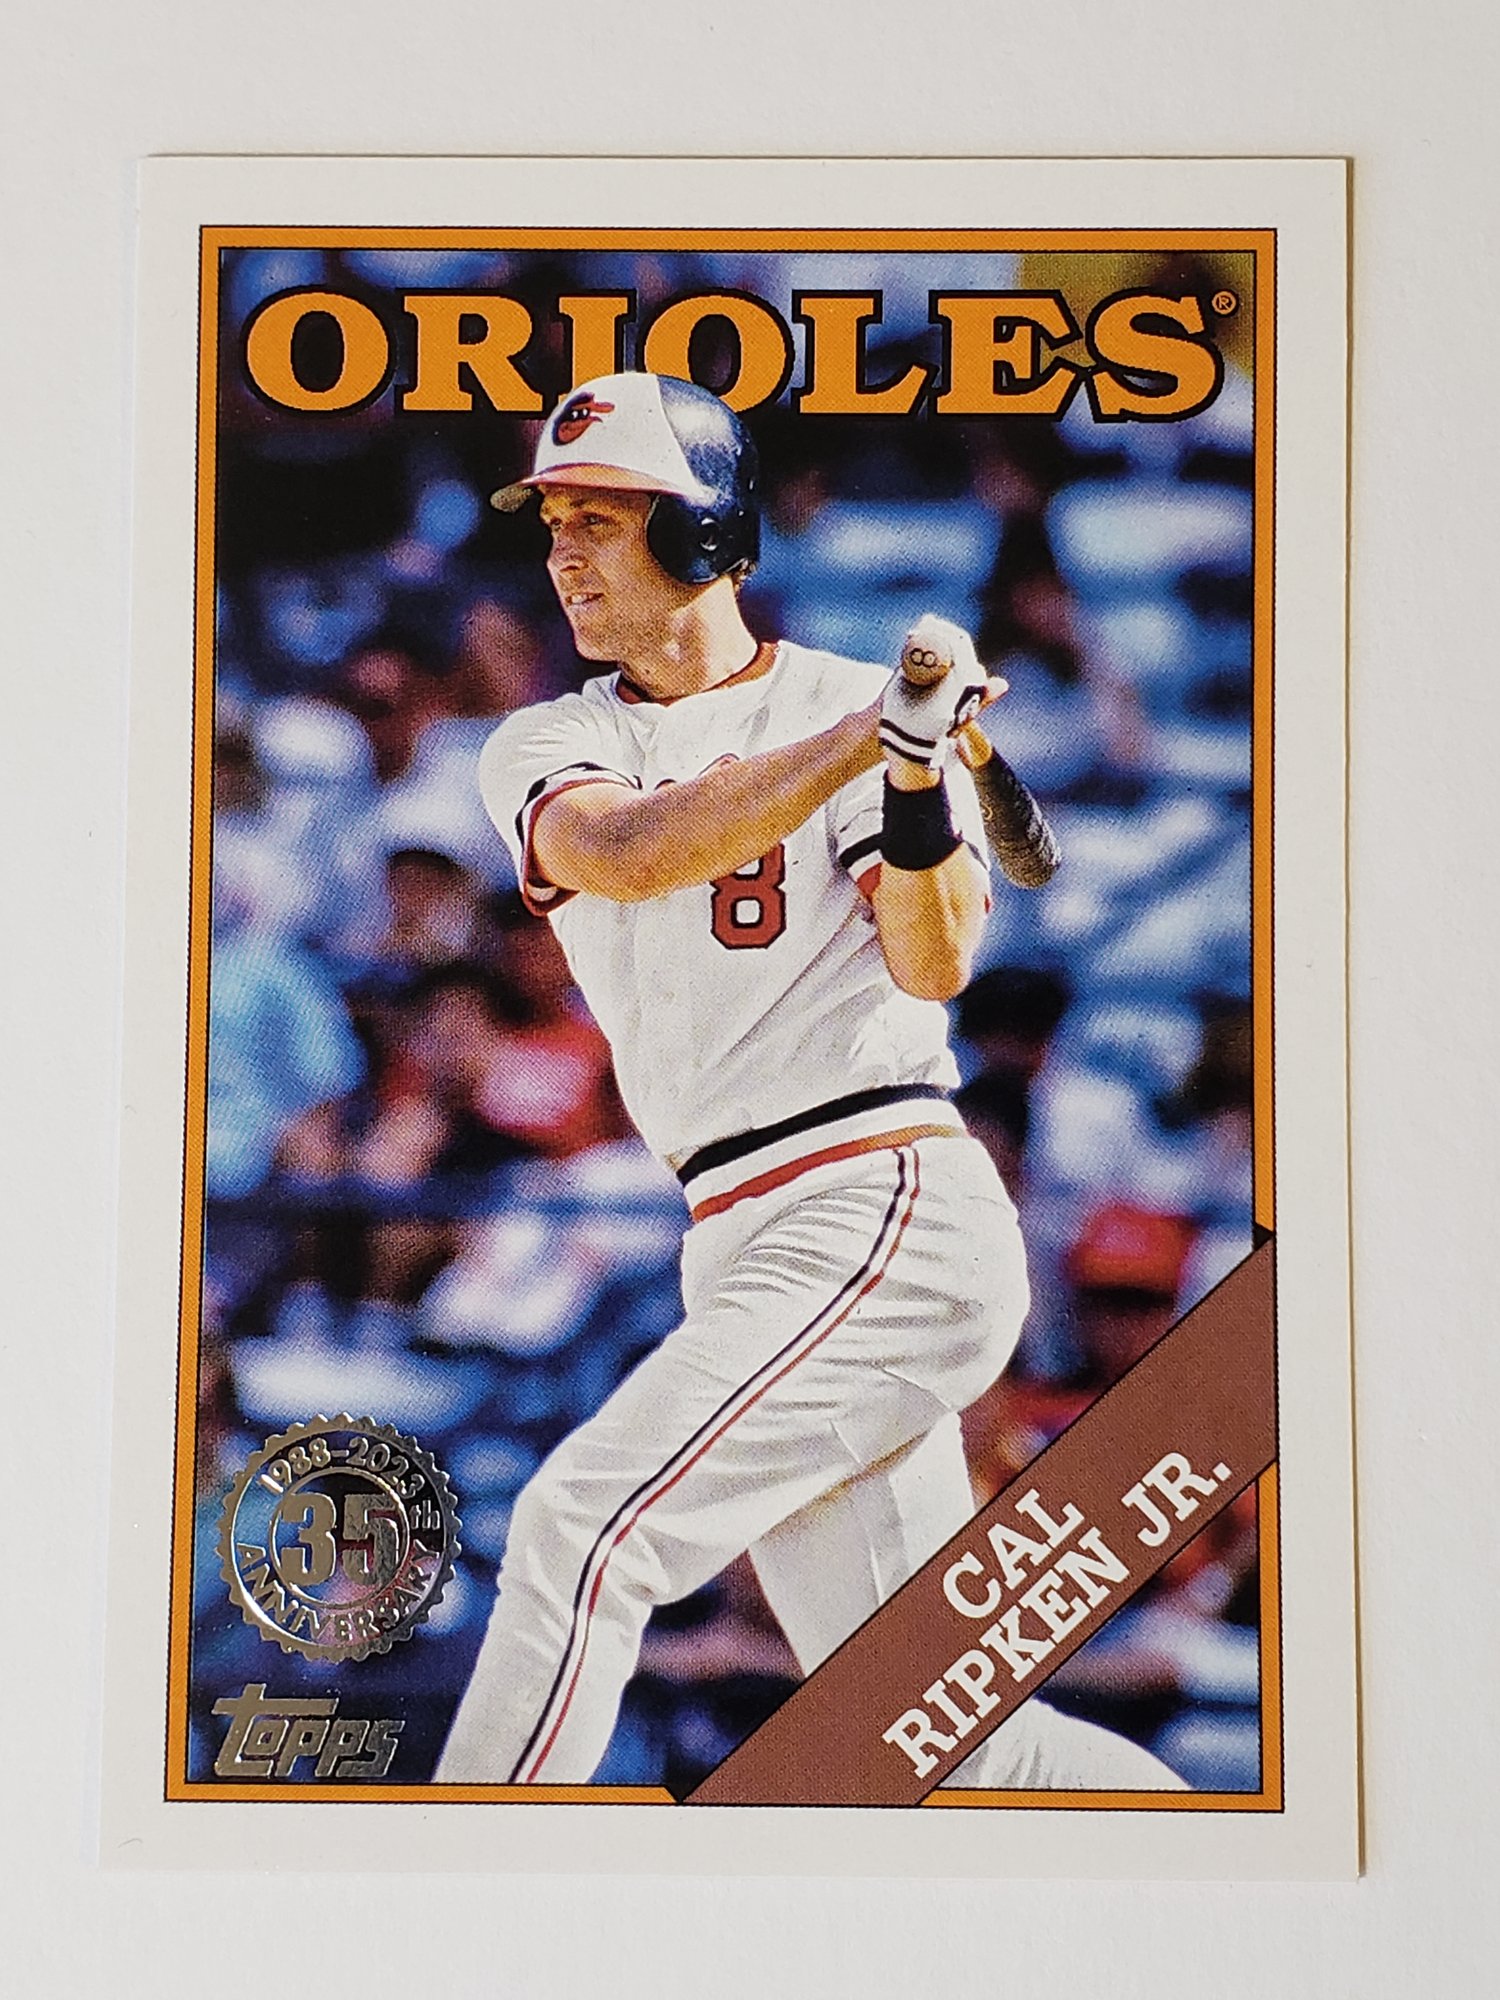 2023 Topps Cal Ripken Jr. 1988 Insert Baseball Card Orioles #6869 |  Auctionninja.com